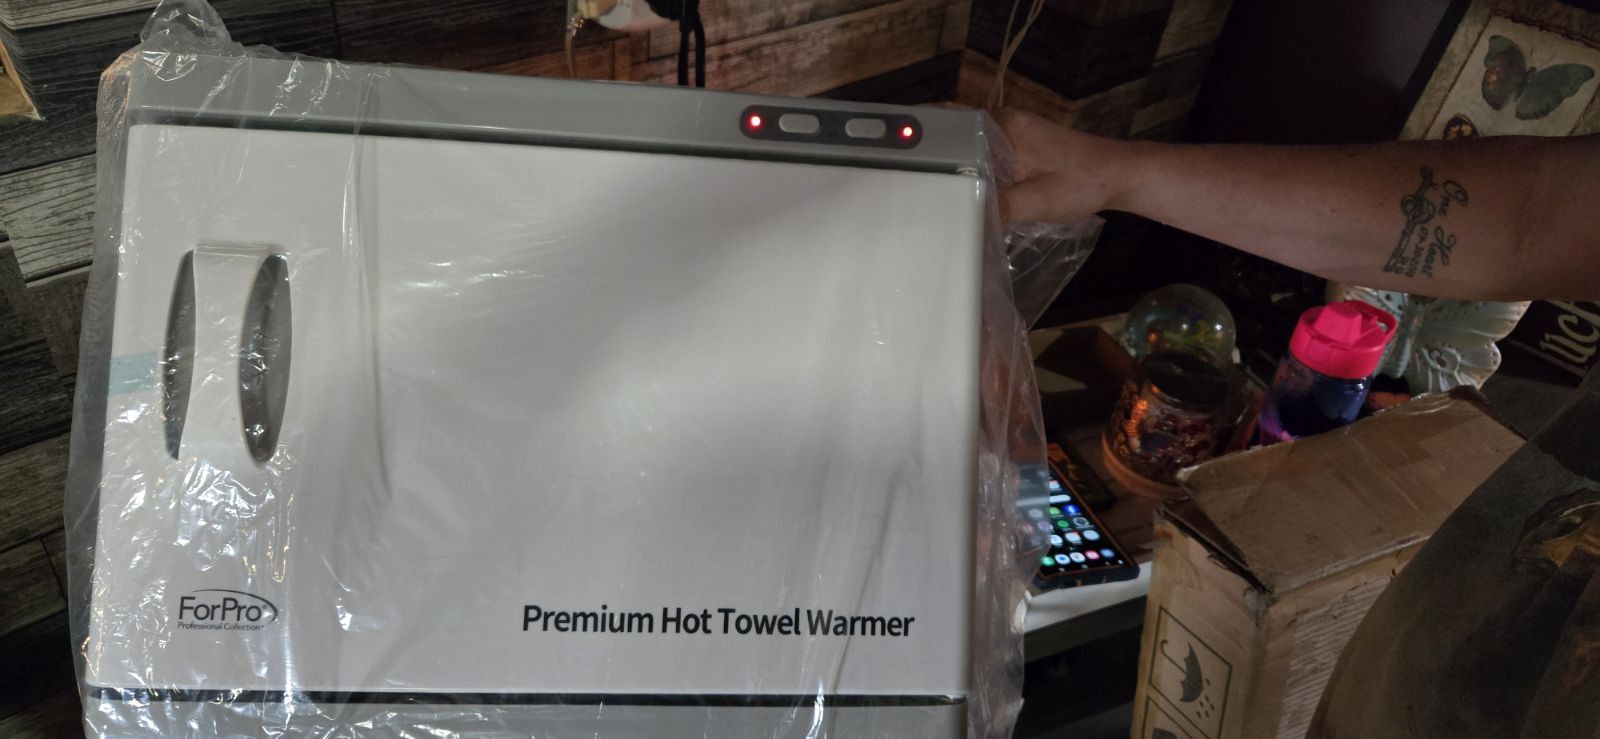 Premium hot towel warmer